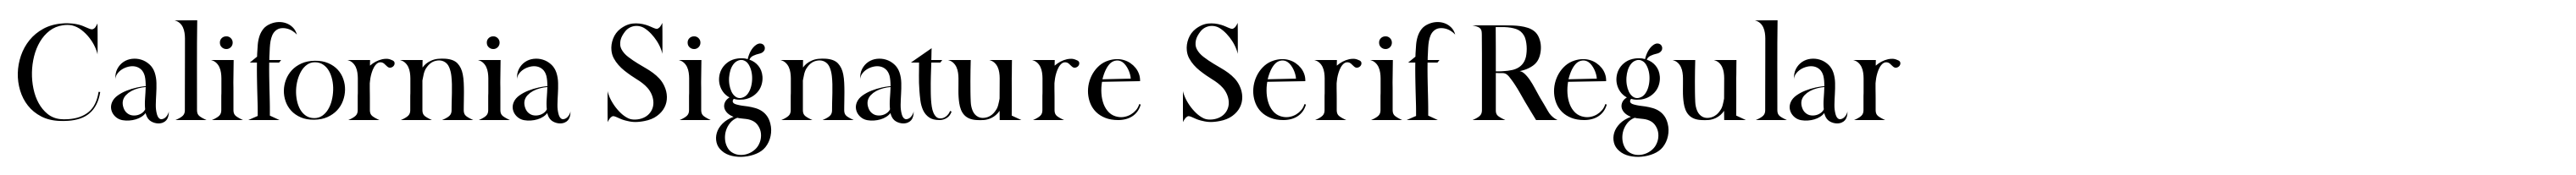 California Signature Serif Regular